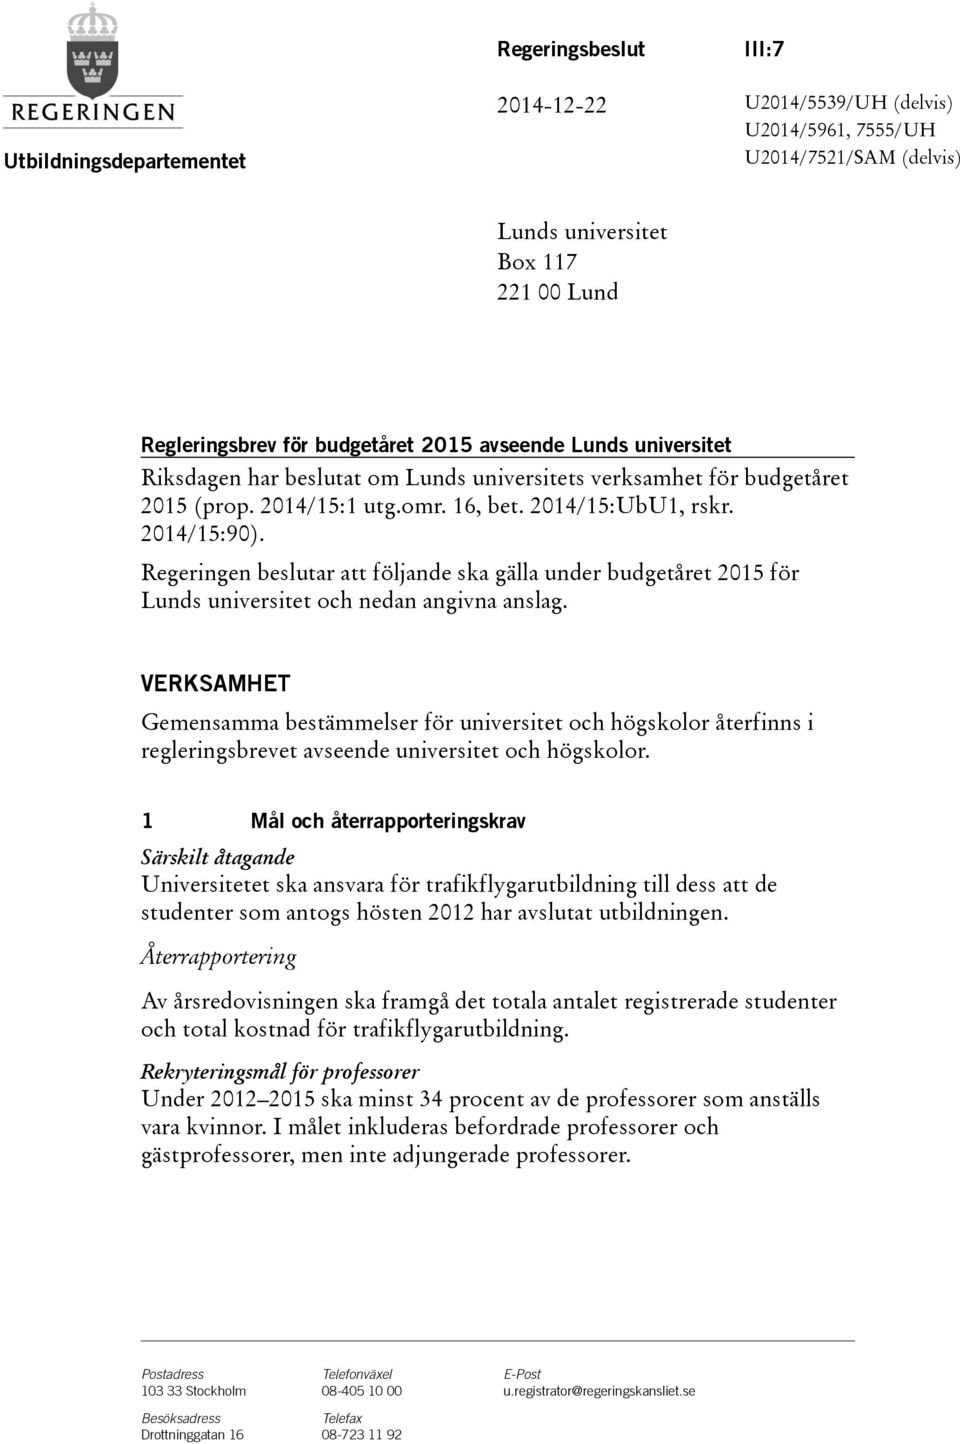 Regeringen beslutar att följande ska gälla under budgetåret 2015 för Lunds universitet och nedan angivna anslag.